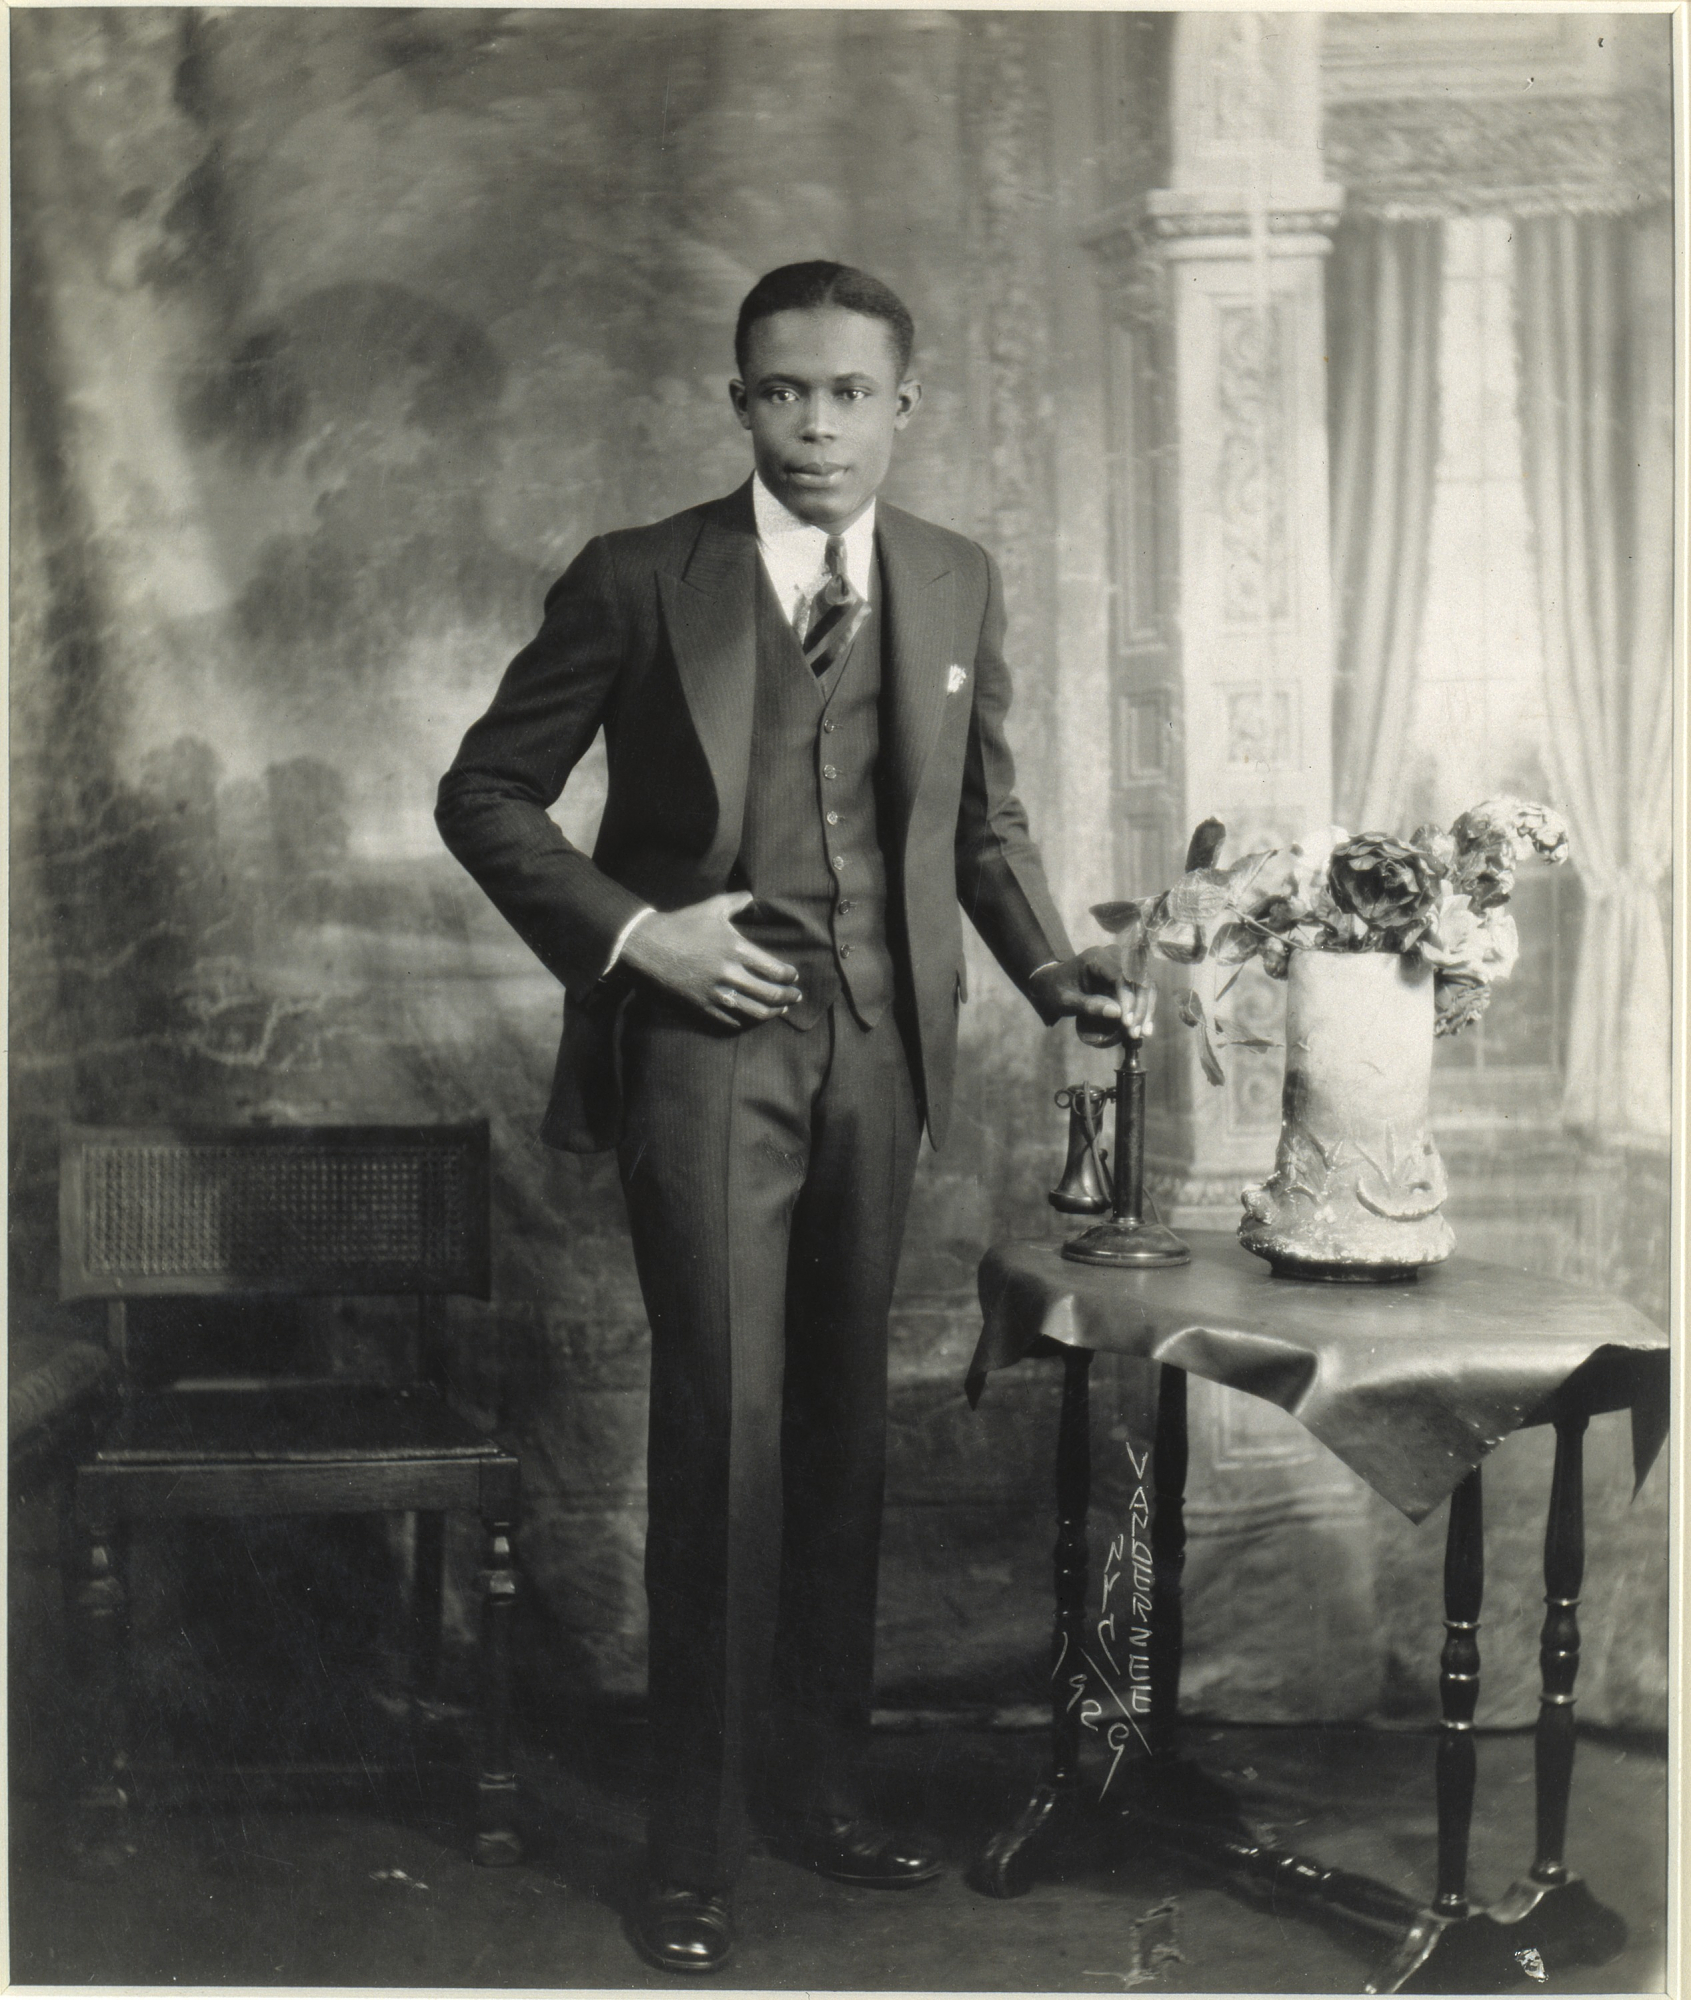 James VanDerZee, "Studio Portrait of Young Man with Telephone", 1929